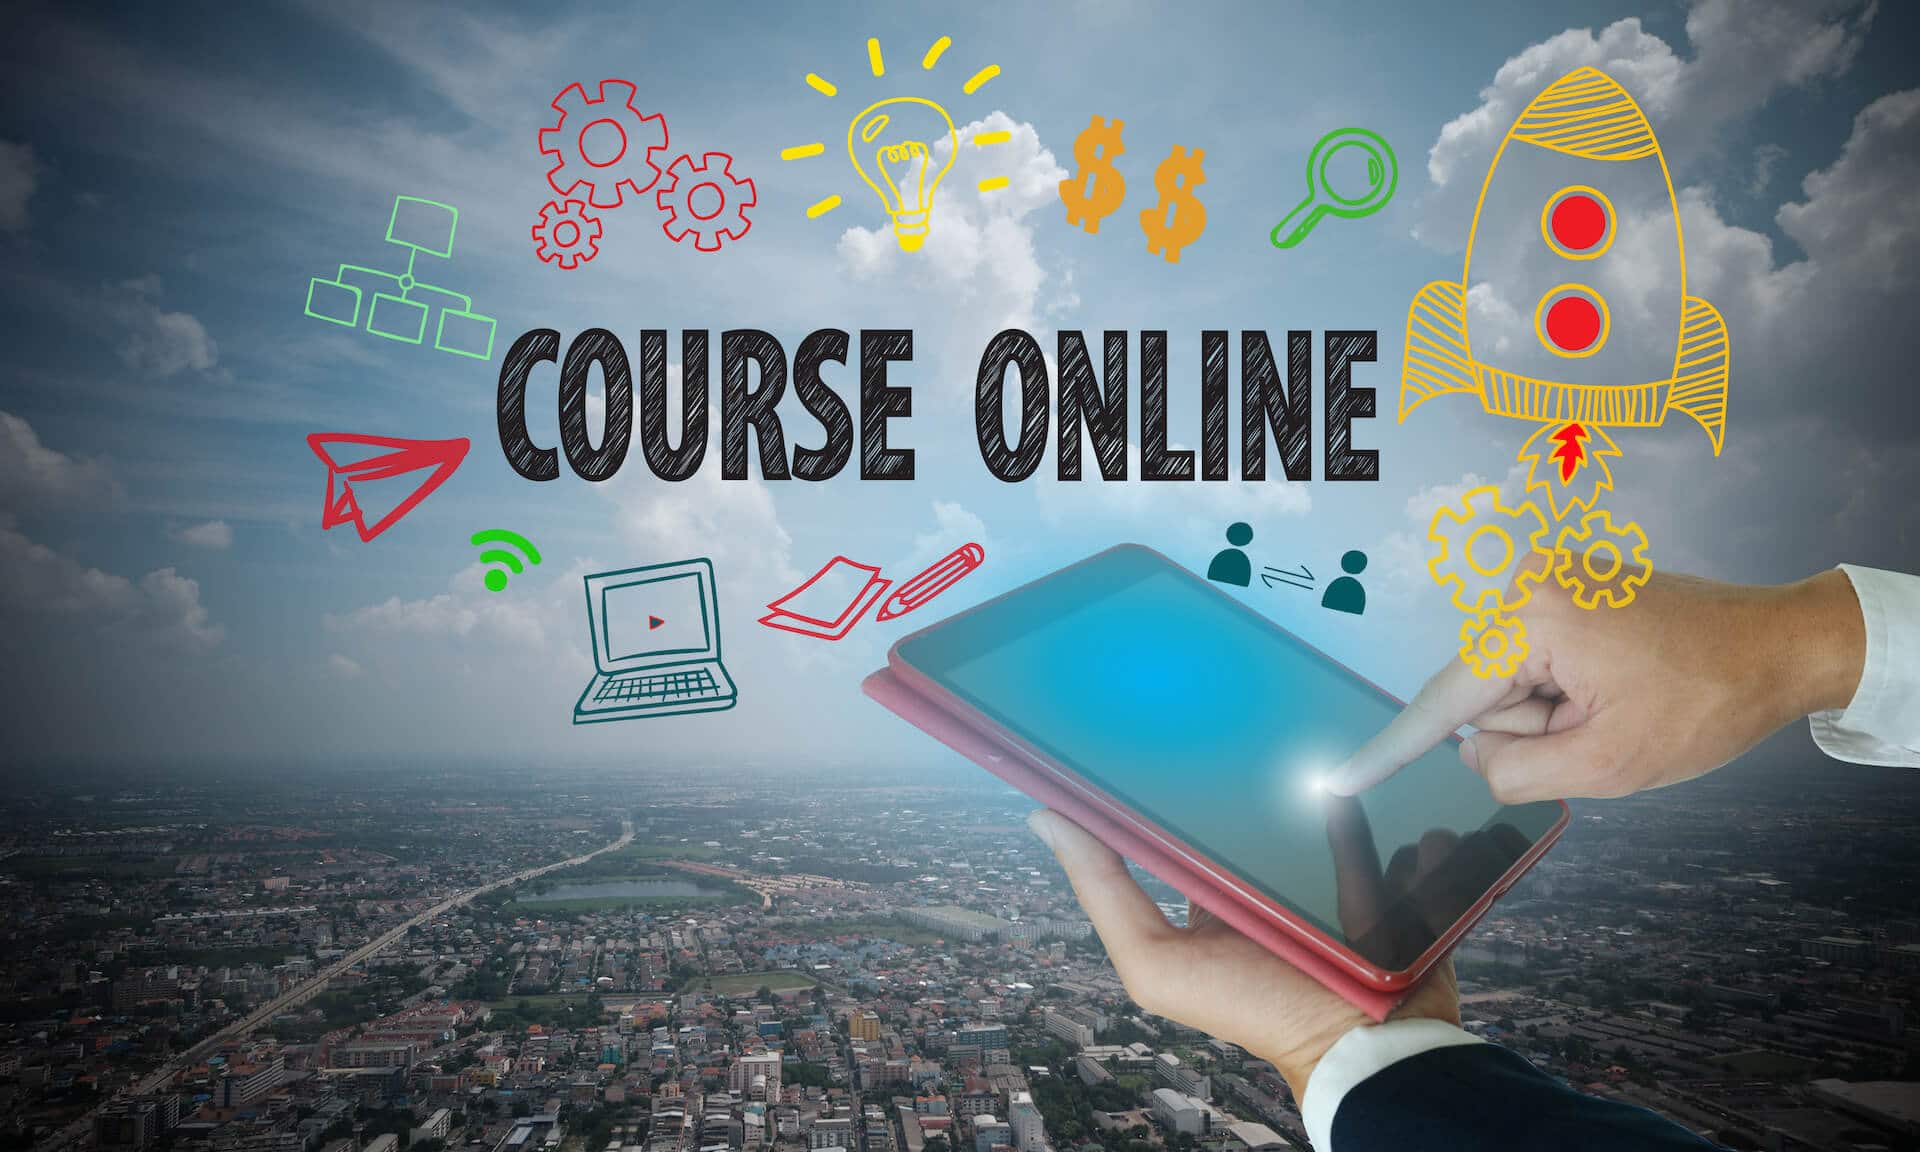 Du willst einen Online Kurs verkaufen? Diese 7 Dinge brauchst du dazu!